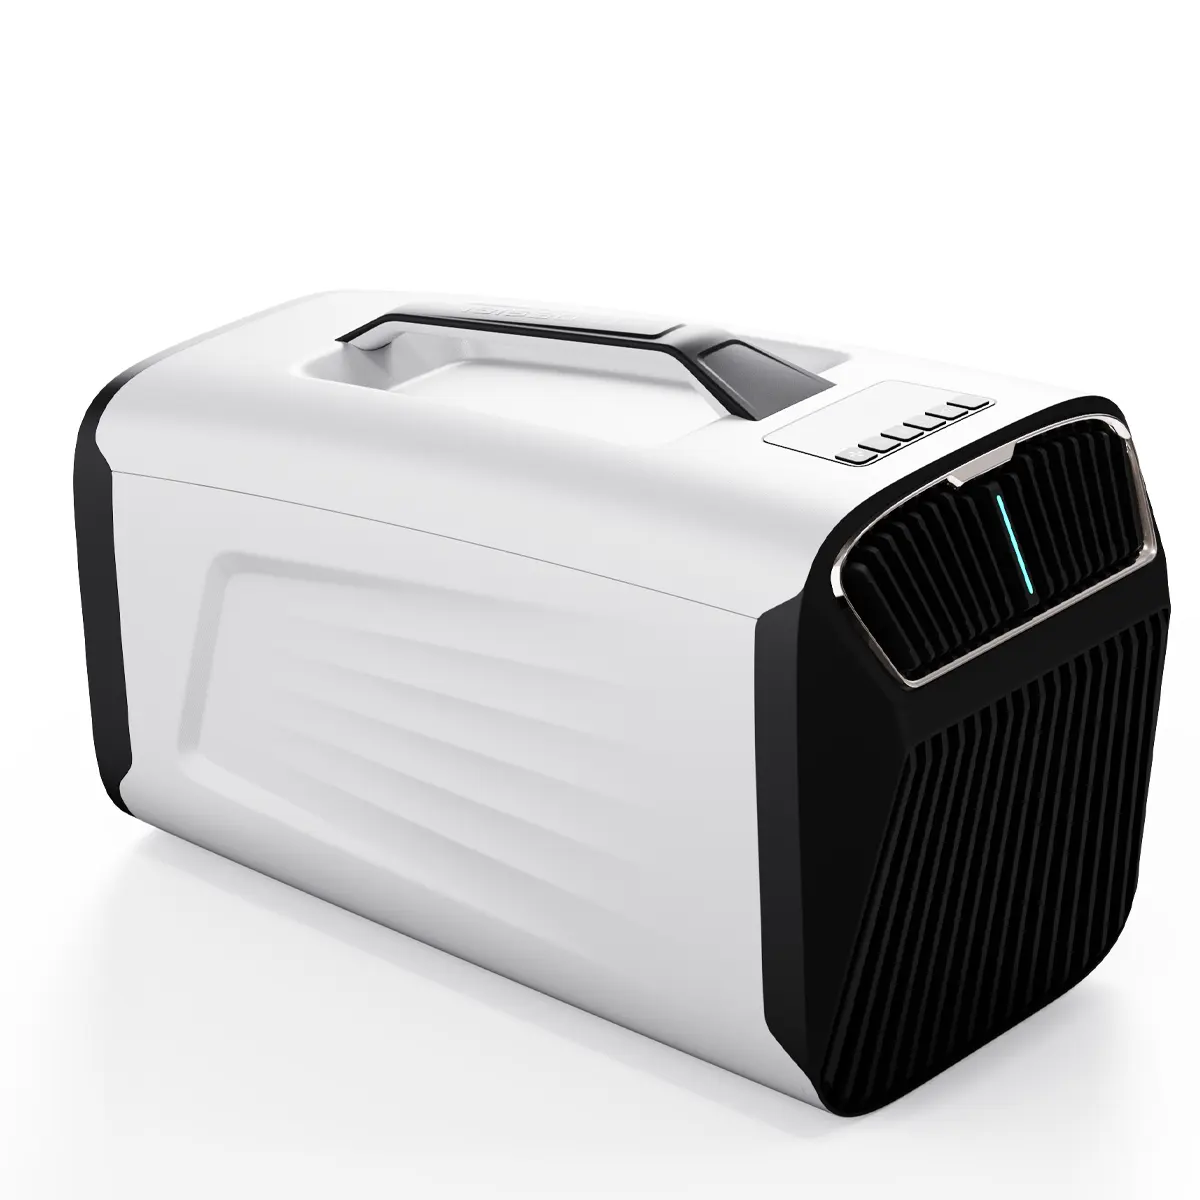 IOG-1 karavan klima rv hava con 12v dc araba buzdolabı ısıtma taşınabilir fan seyahat çadır çadır fan ışıkları